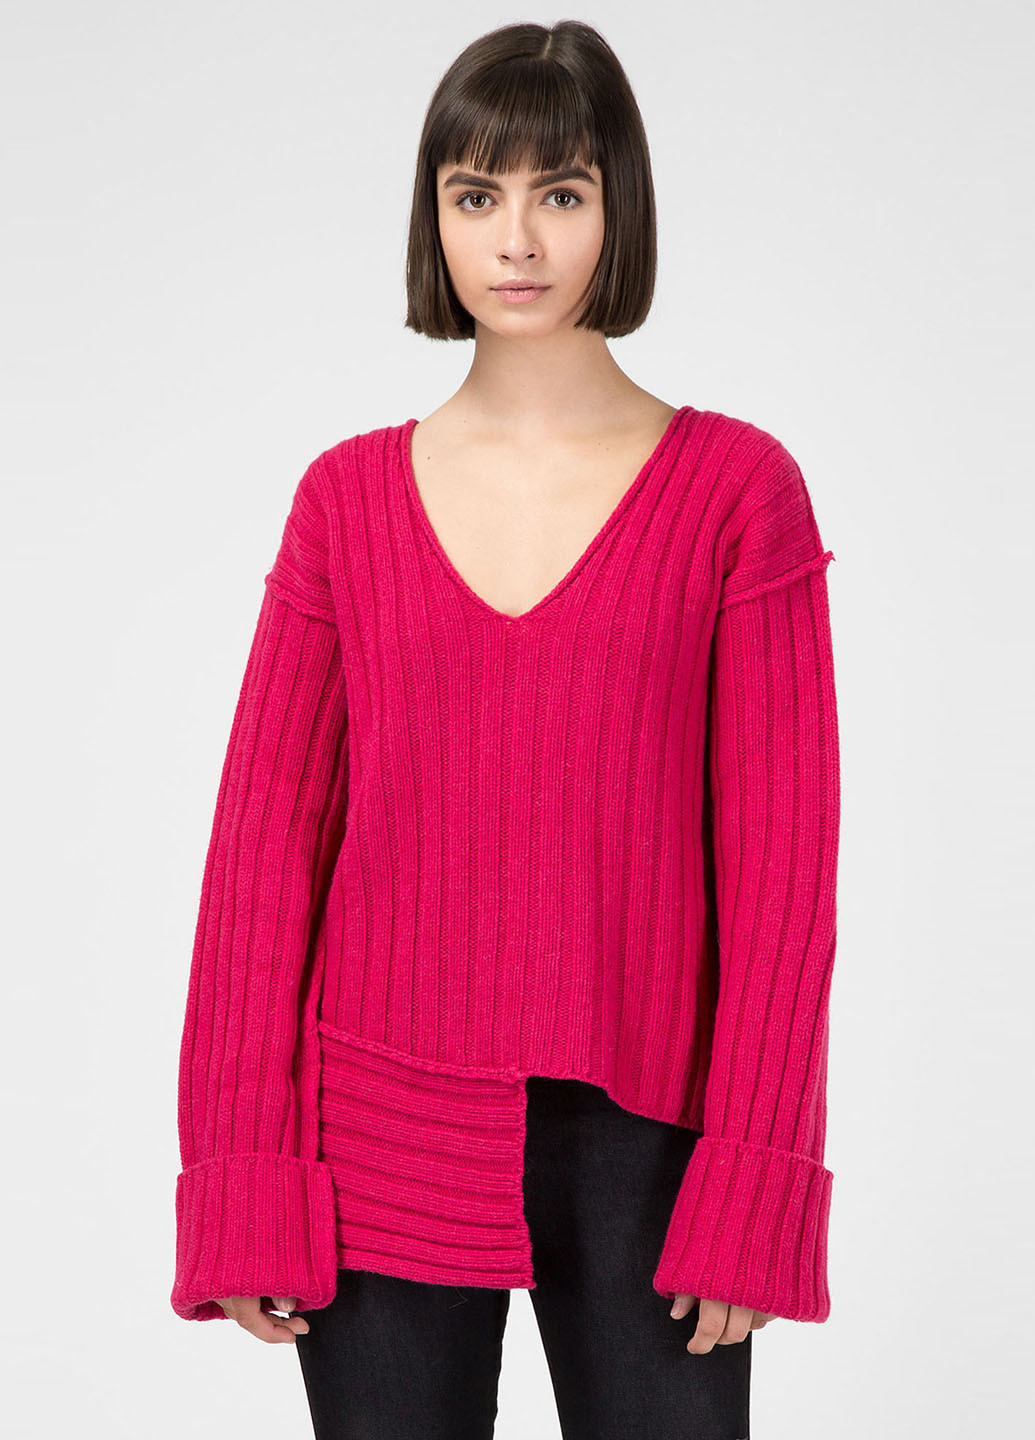 Фуксиновый демисезонный пуловер пуловер Diesel